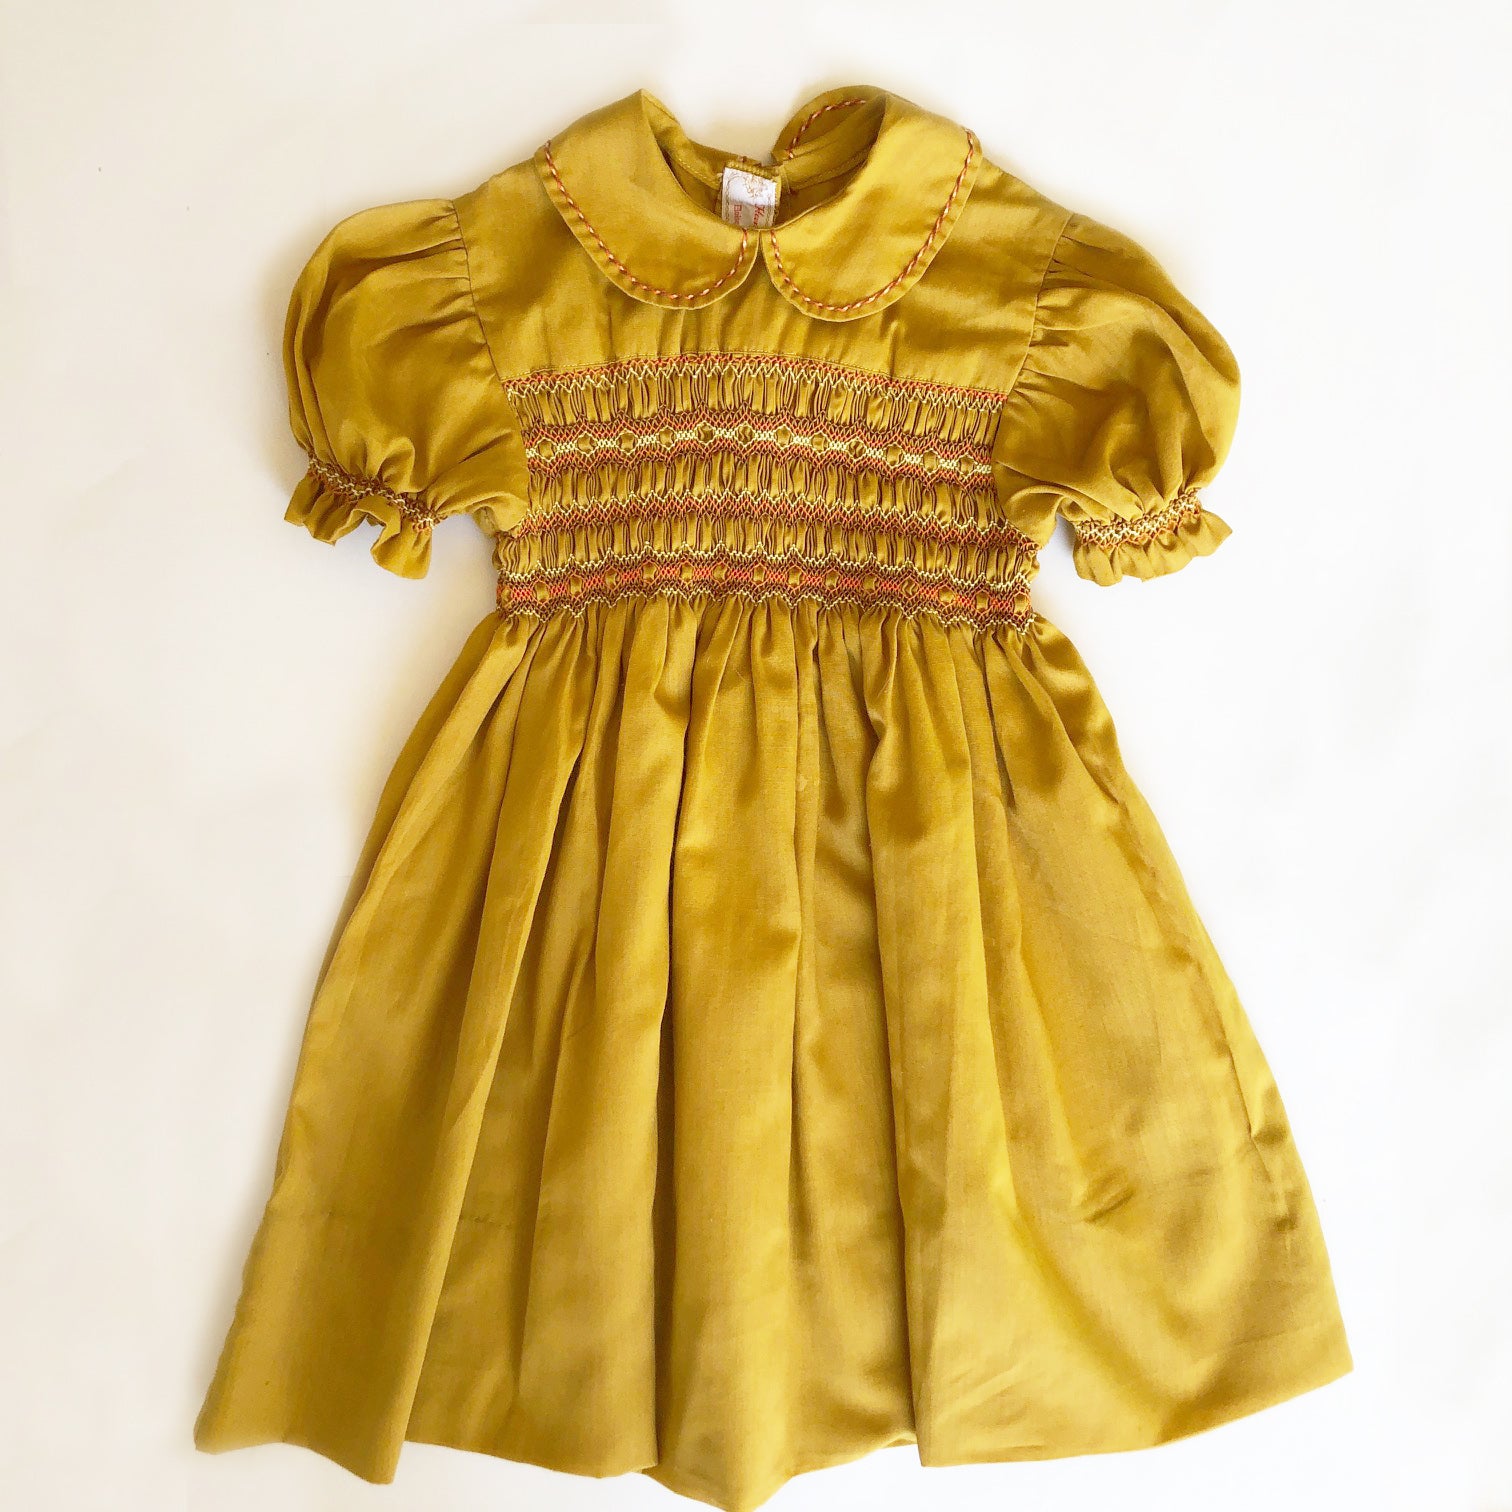 Hand Smocked Vintage Dress size 18-24 months